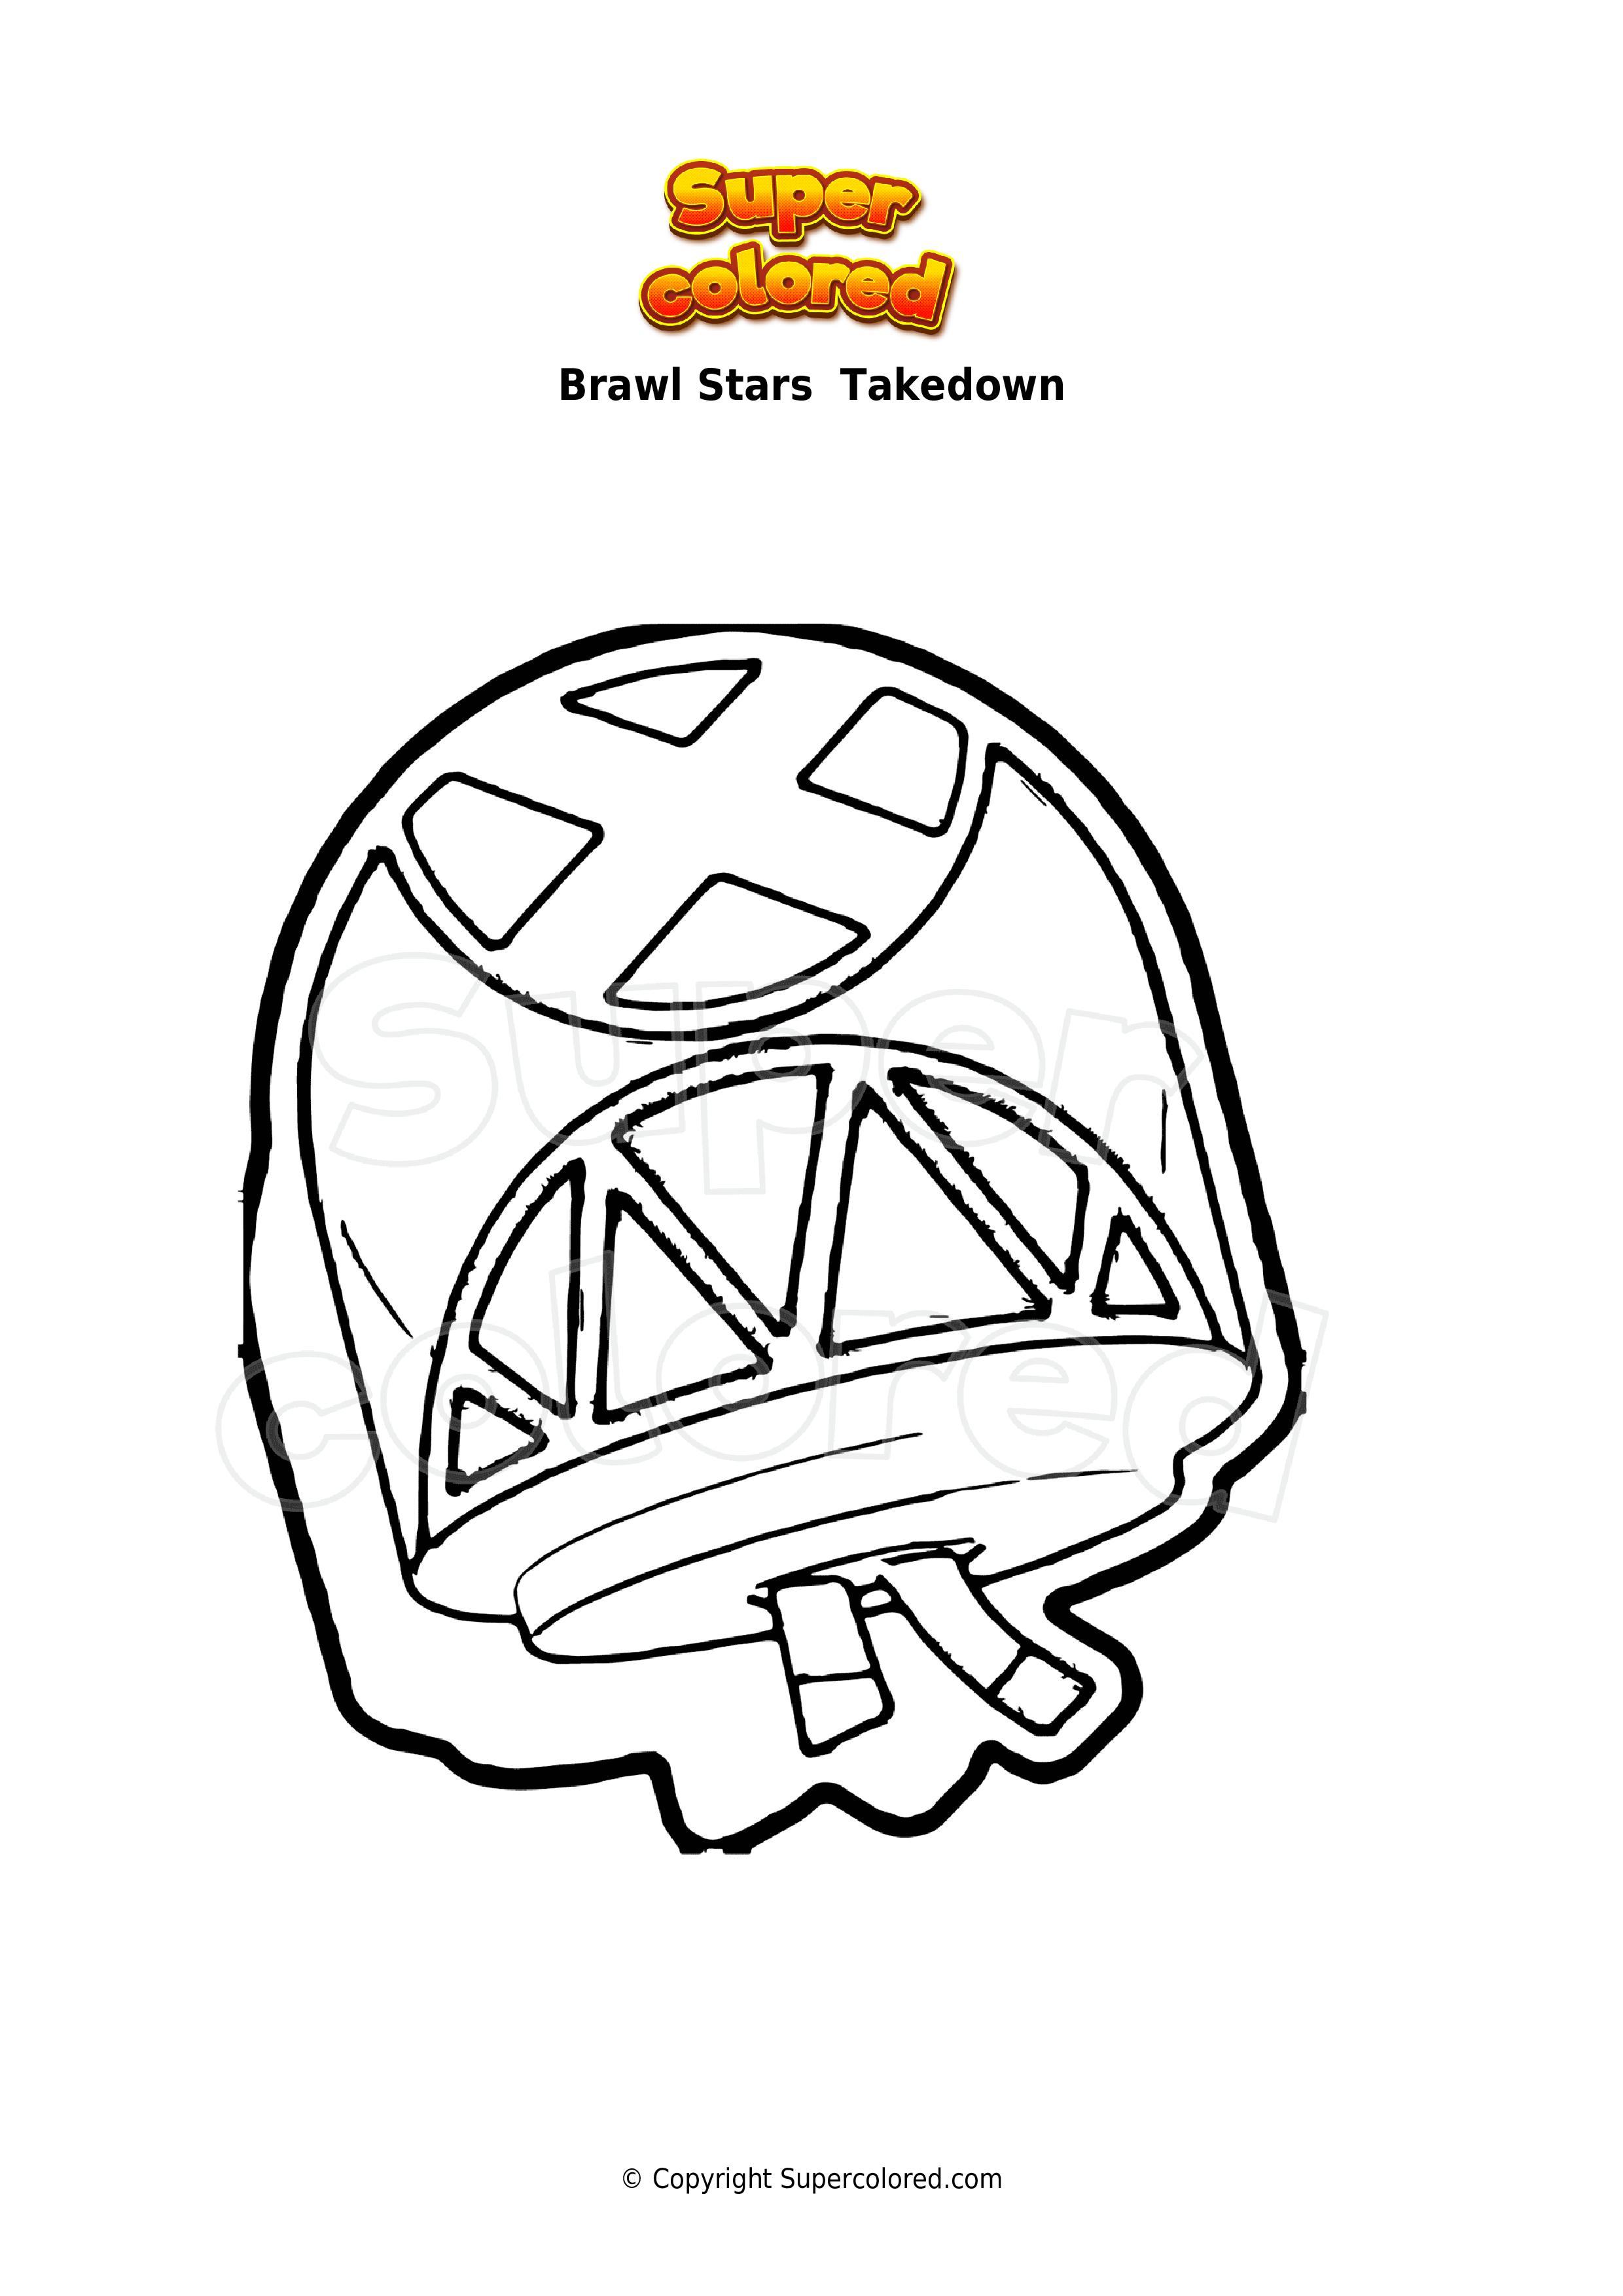 Dibujo Para Colorear Brawl Stars Takedown Supercolored Com - dibujos para colorear brawl stars simbolo